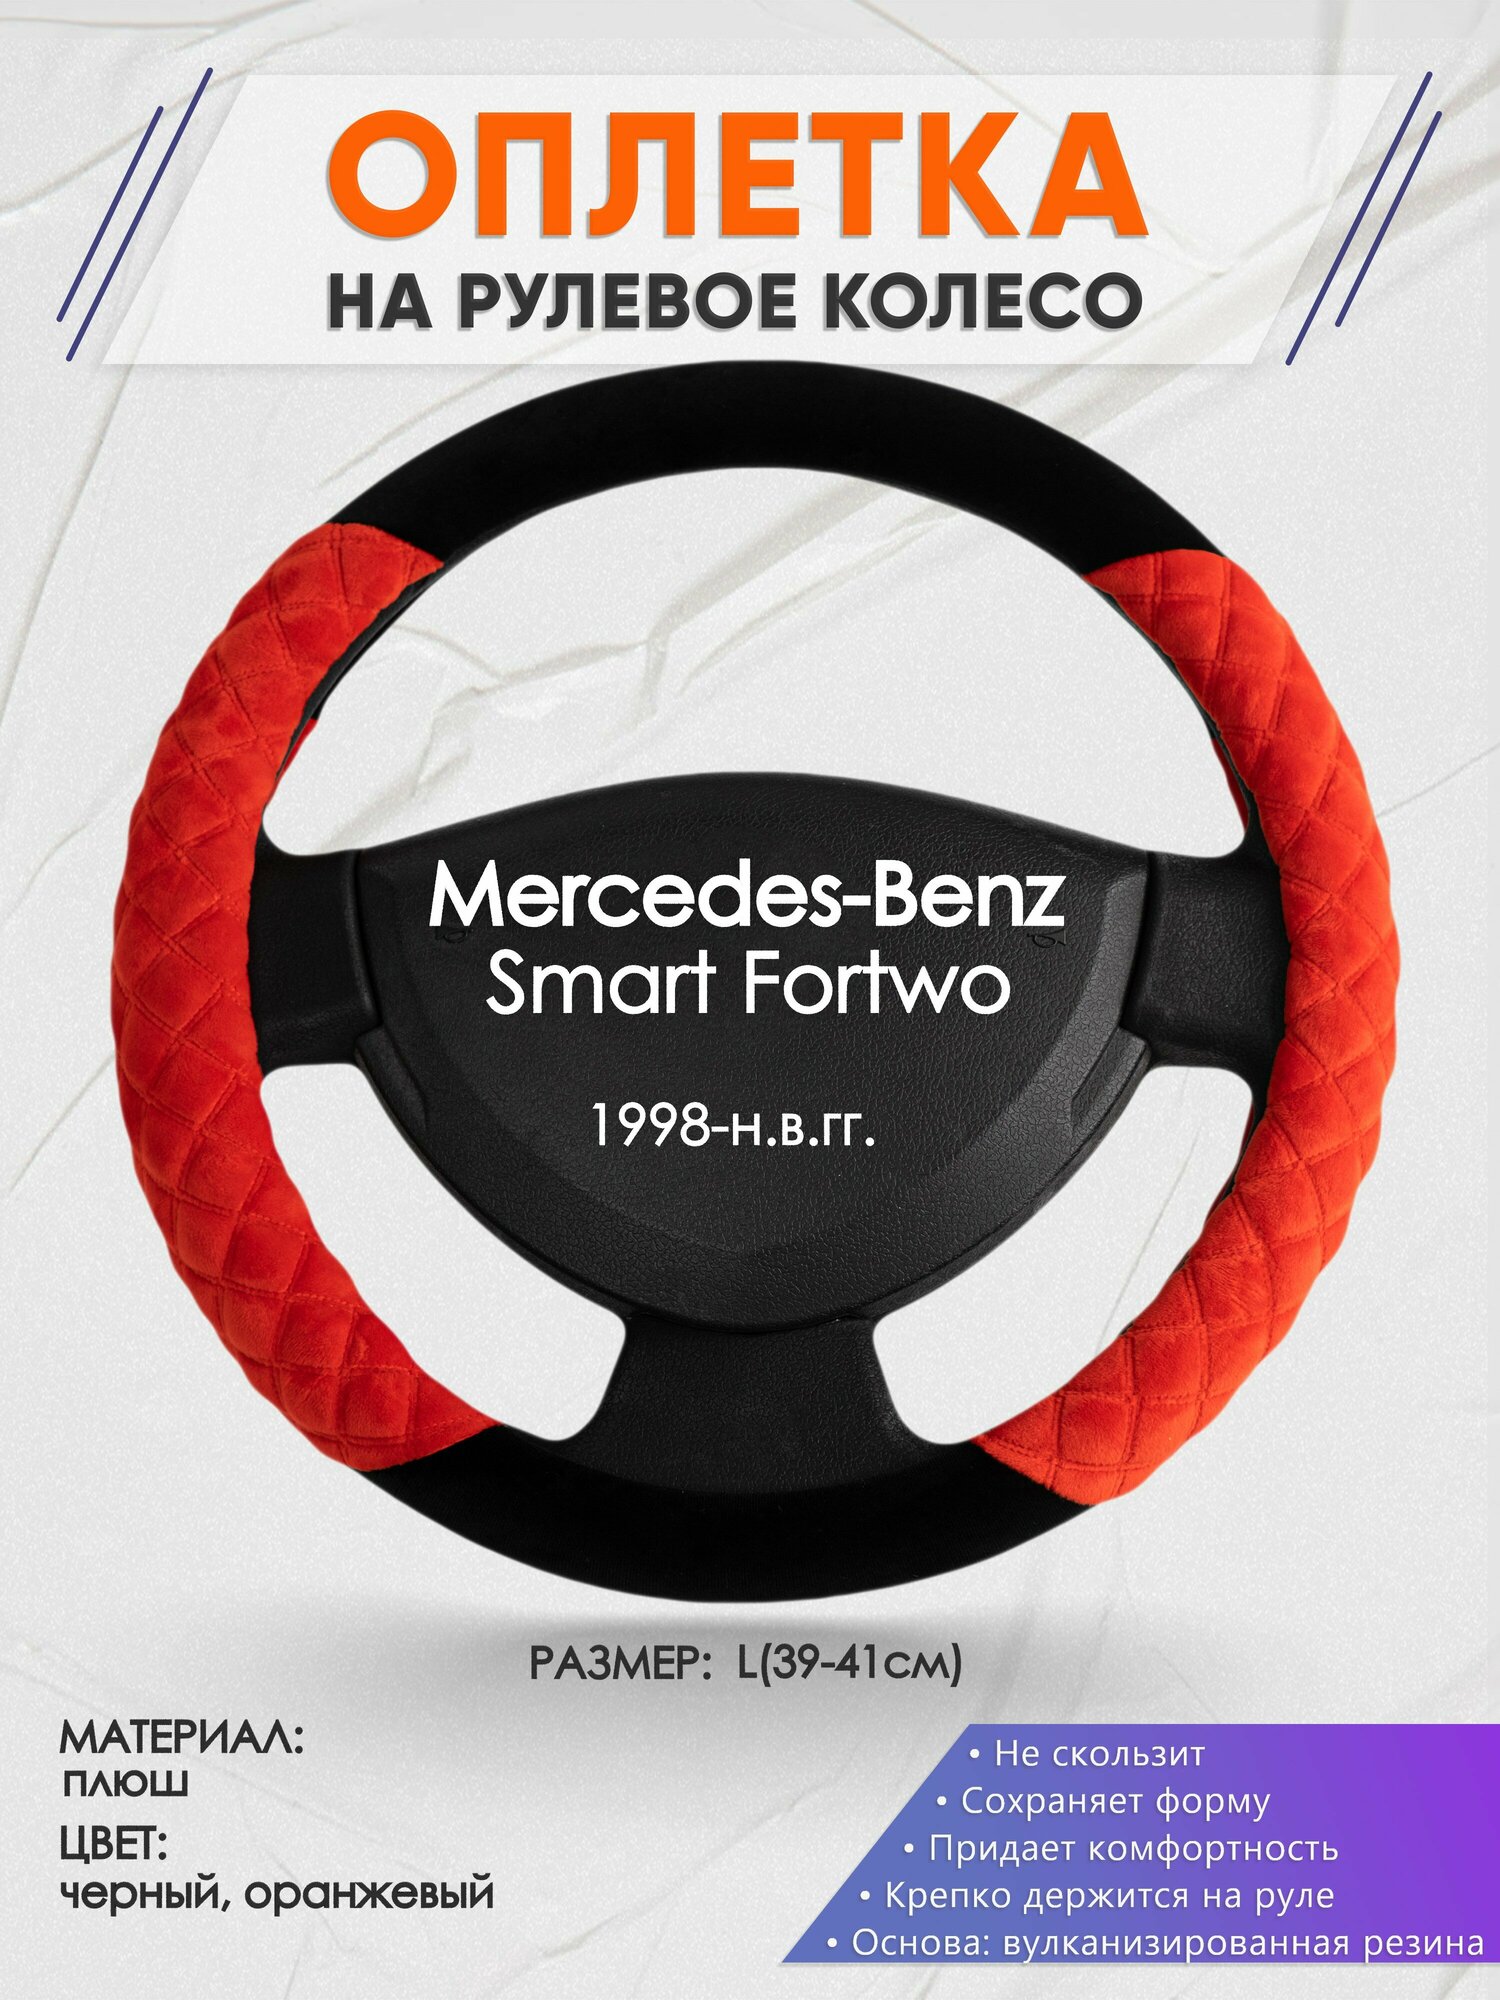 Оплетка на руль для Mercedes-Benz Smart Fortwo(Мерседес Бенц Фортво) 1998-н. в, L(39-41см), Замша 37